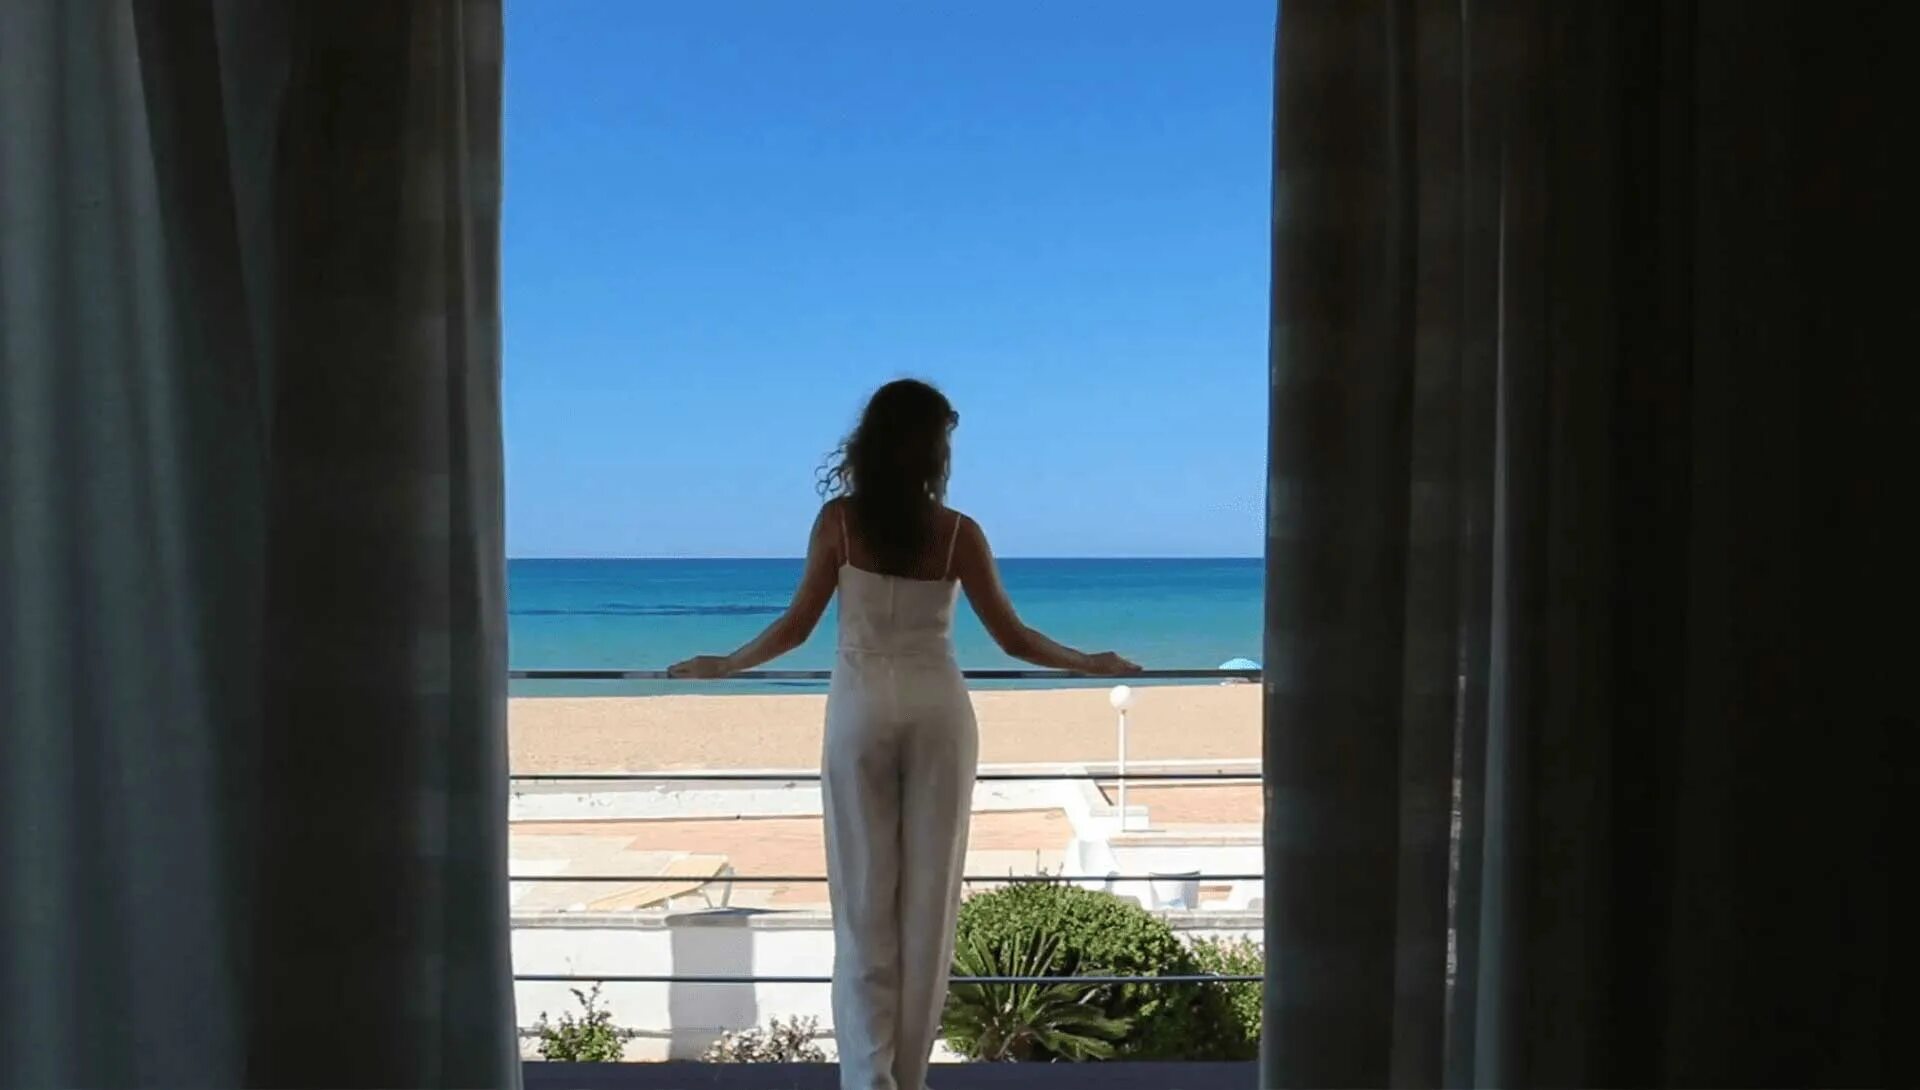 Девушка на балконе с видом на море. Девушка на балконе отеля. Женщина у окна с видом на море. Девушка на террасе с видом на море.